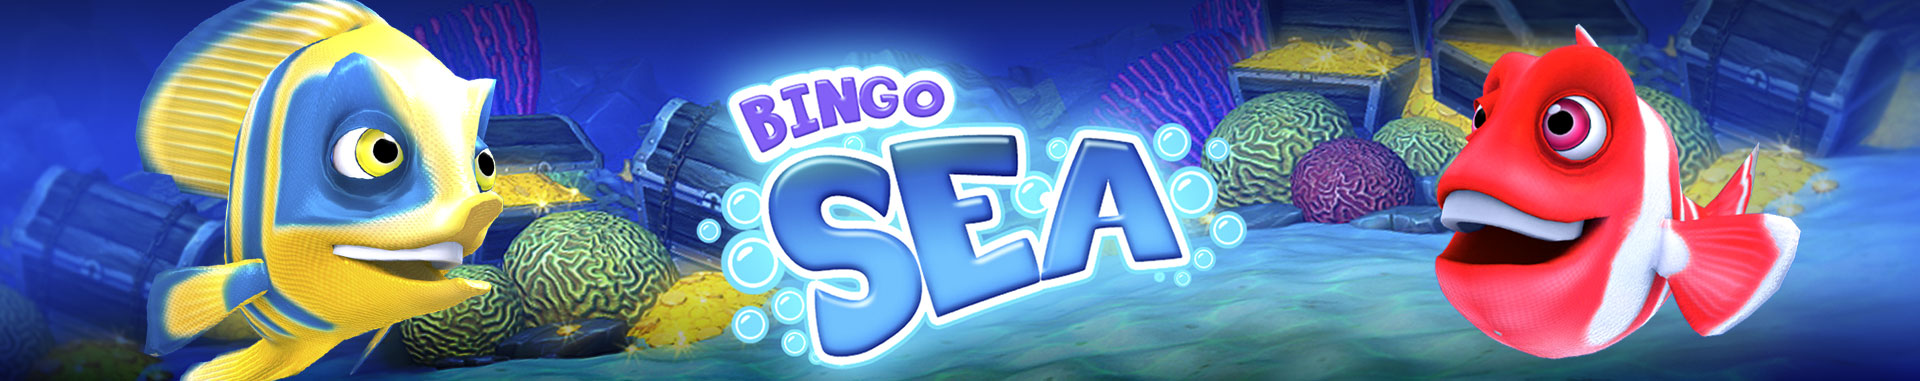 Video Bingo Online Sea